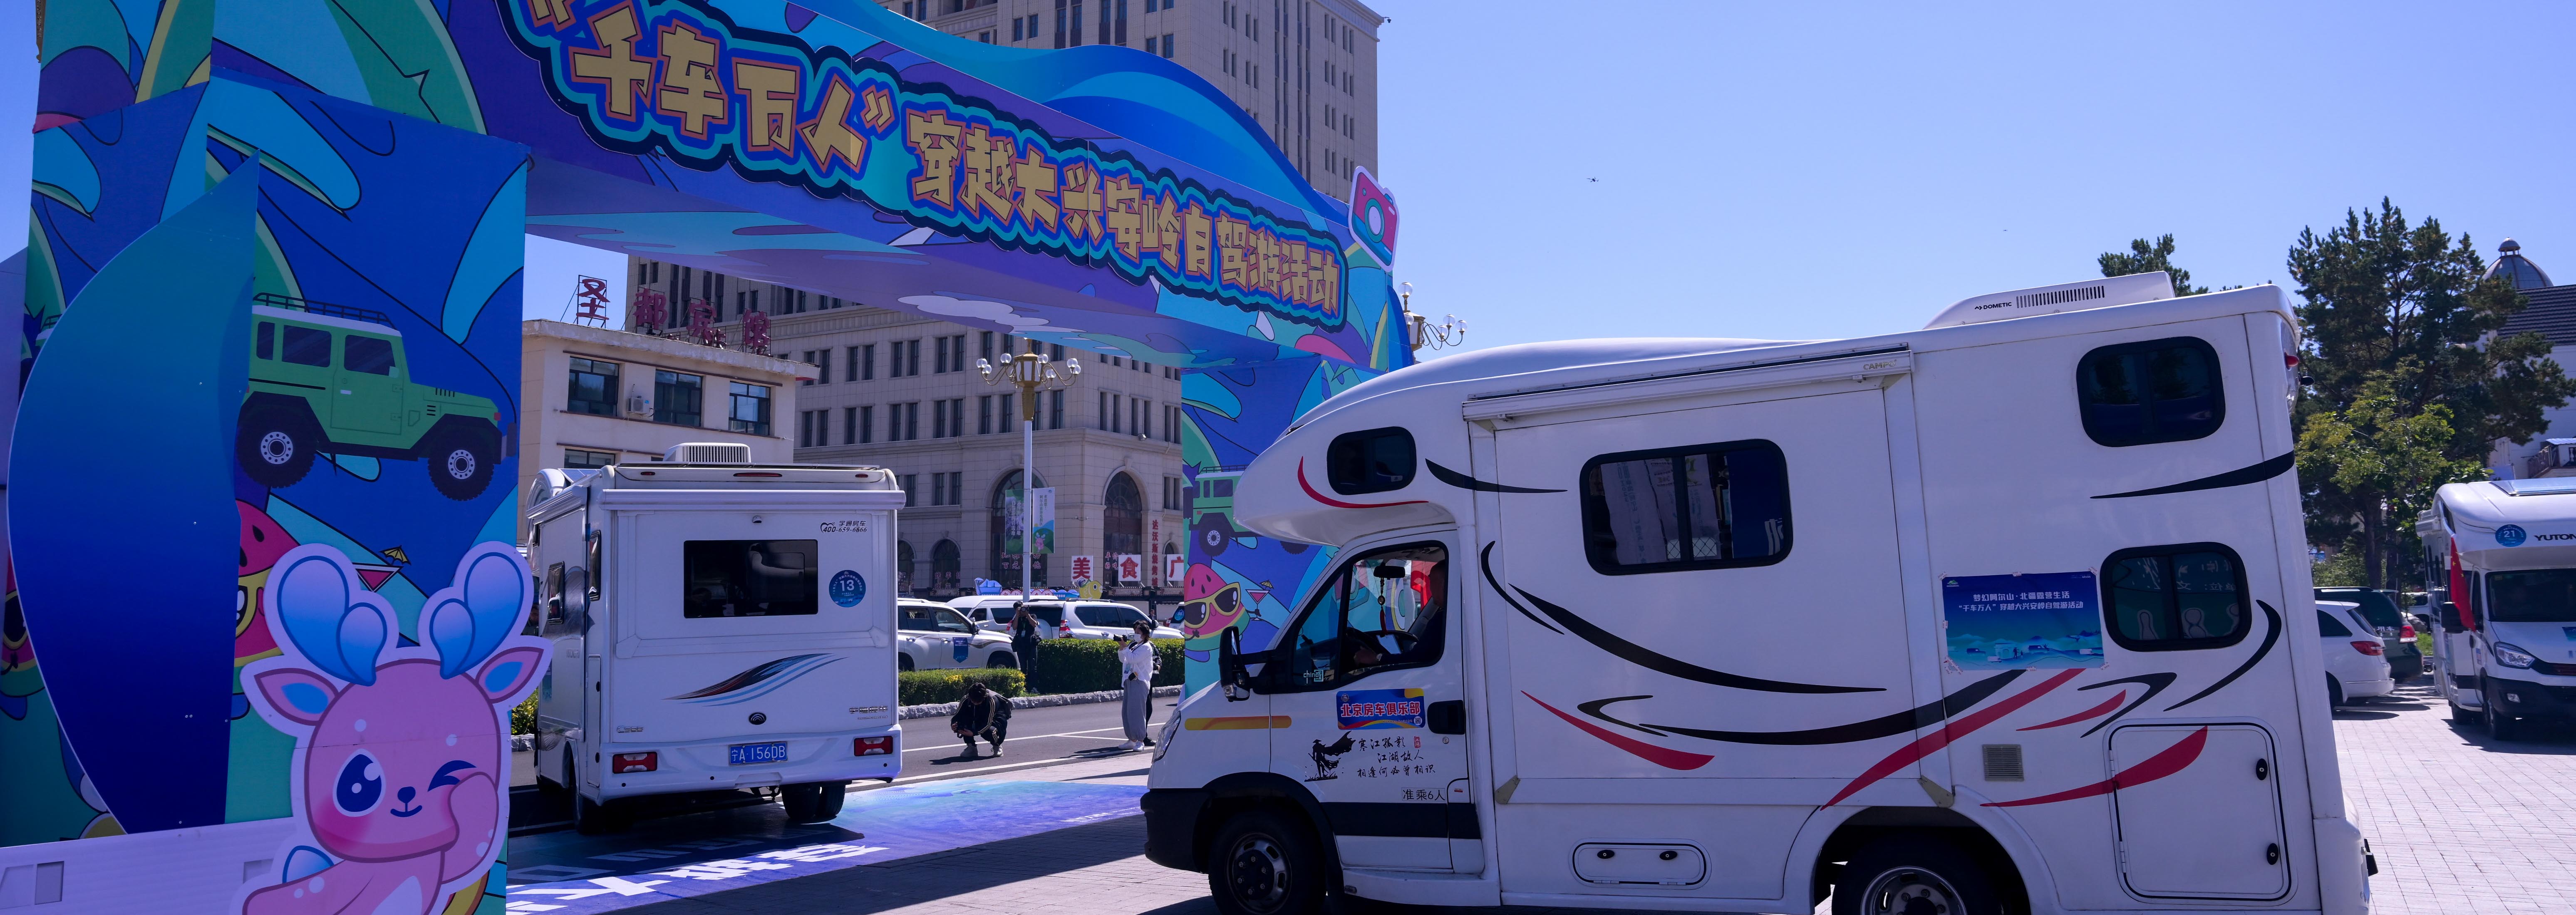 “千车万人”穿越大兴安岭自驾游活动发车仪式在内蒙古阿尔山举办